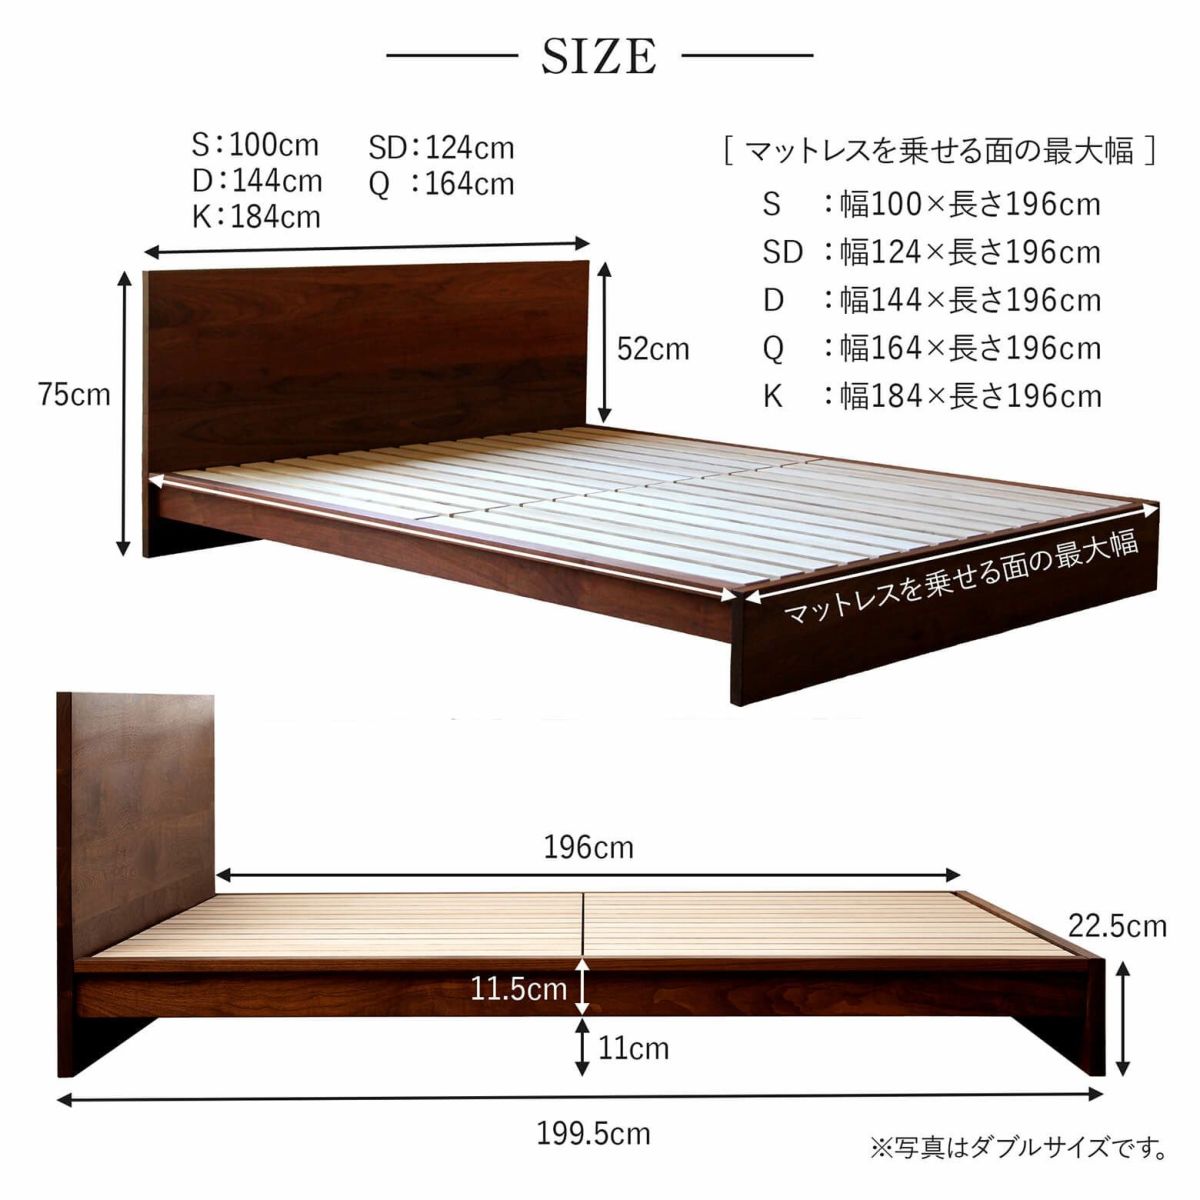 クイーンサイズベッド | 日本最大級のベッド専門店 ビーナスベッド